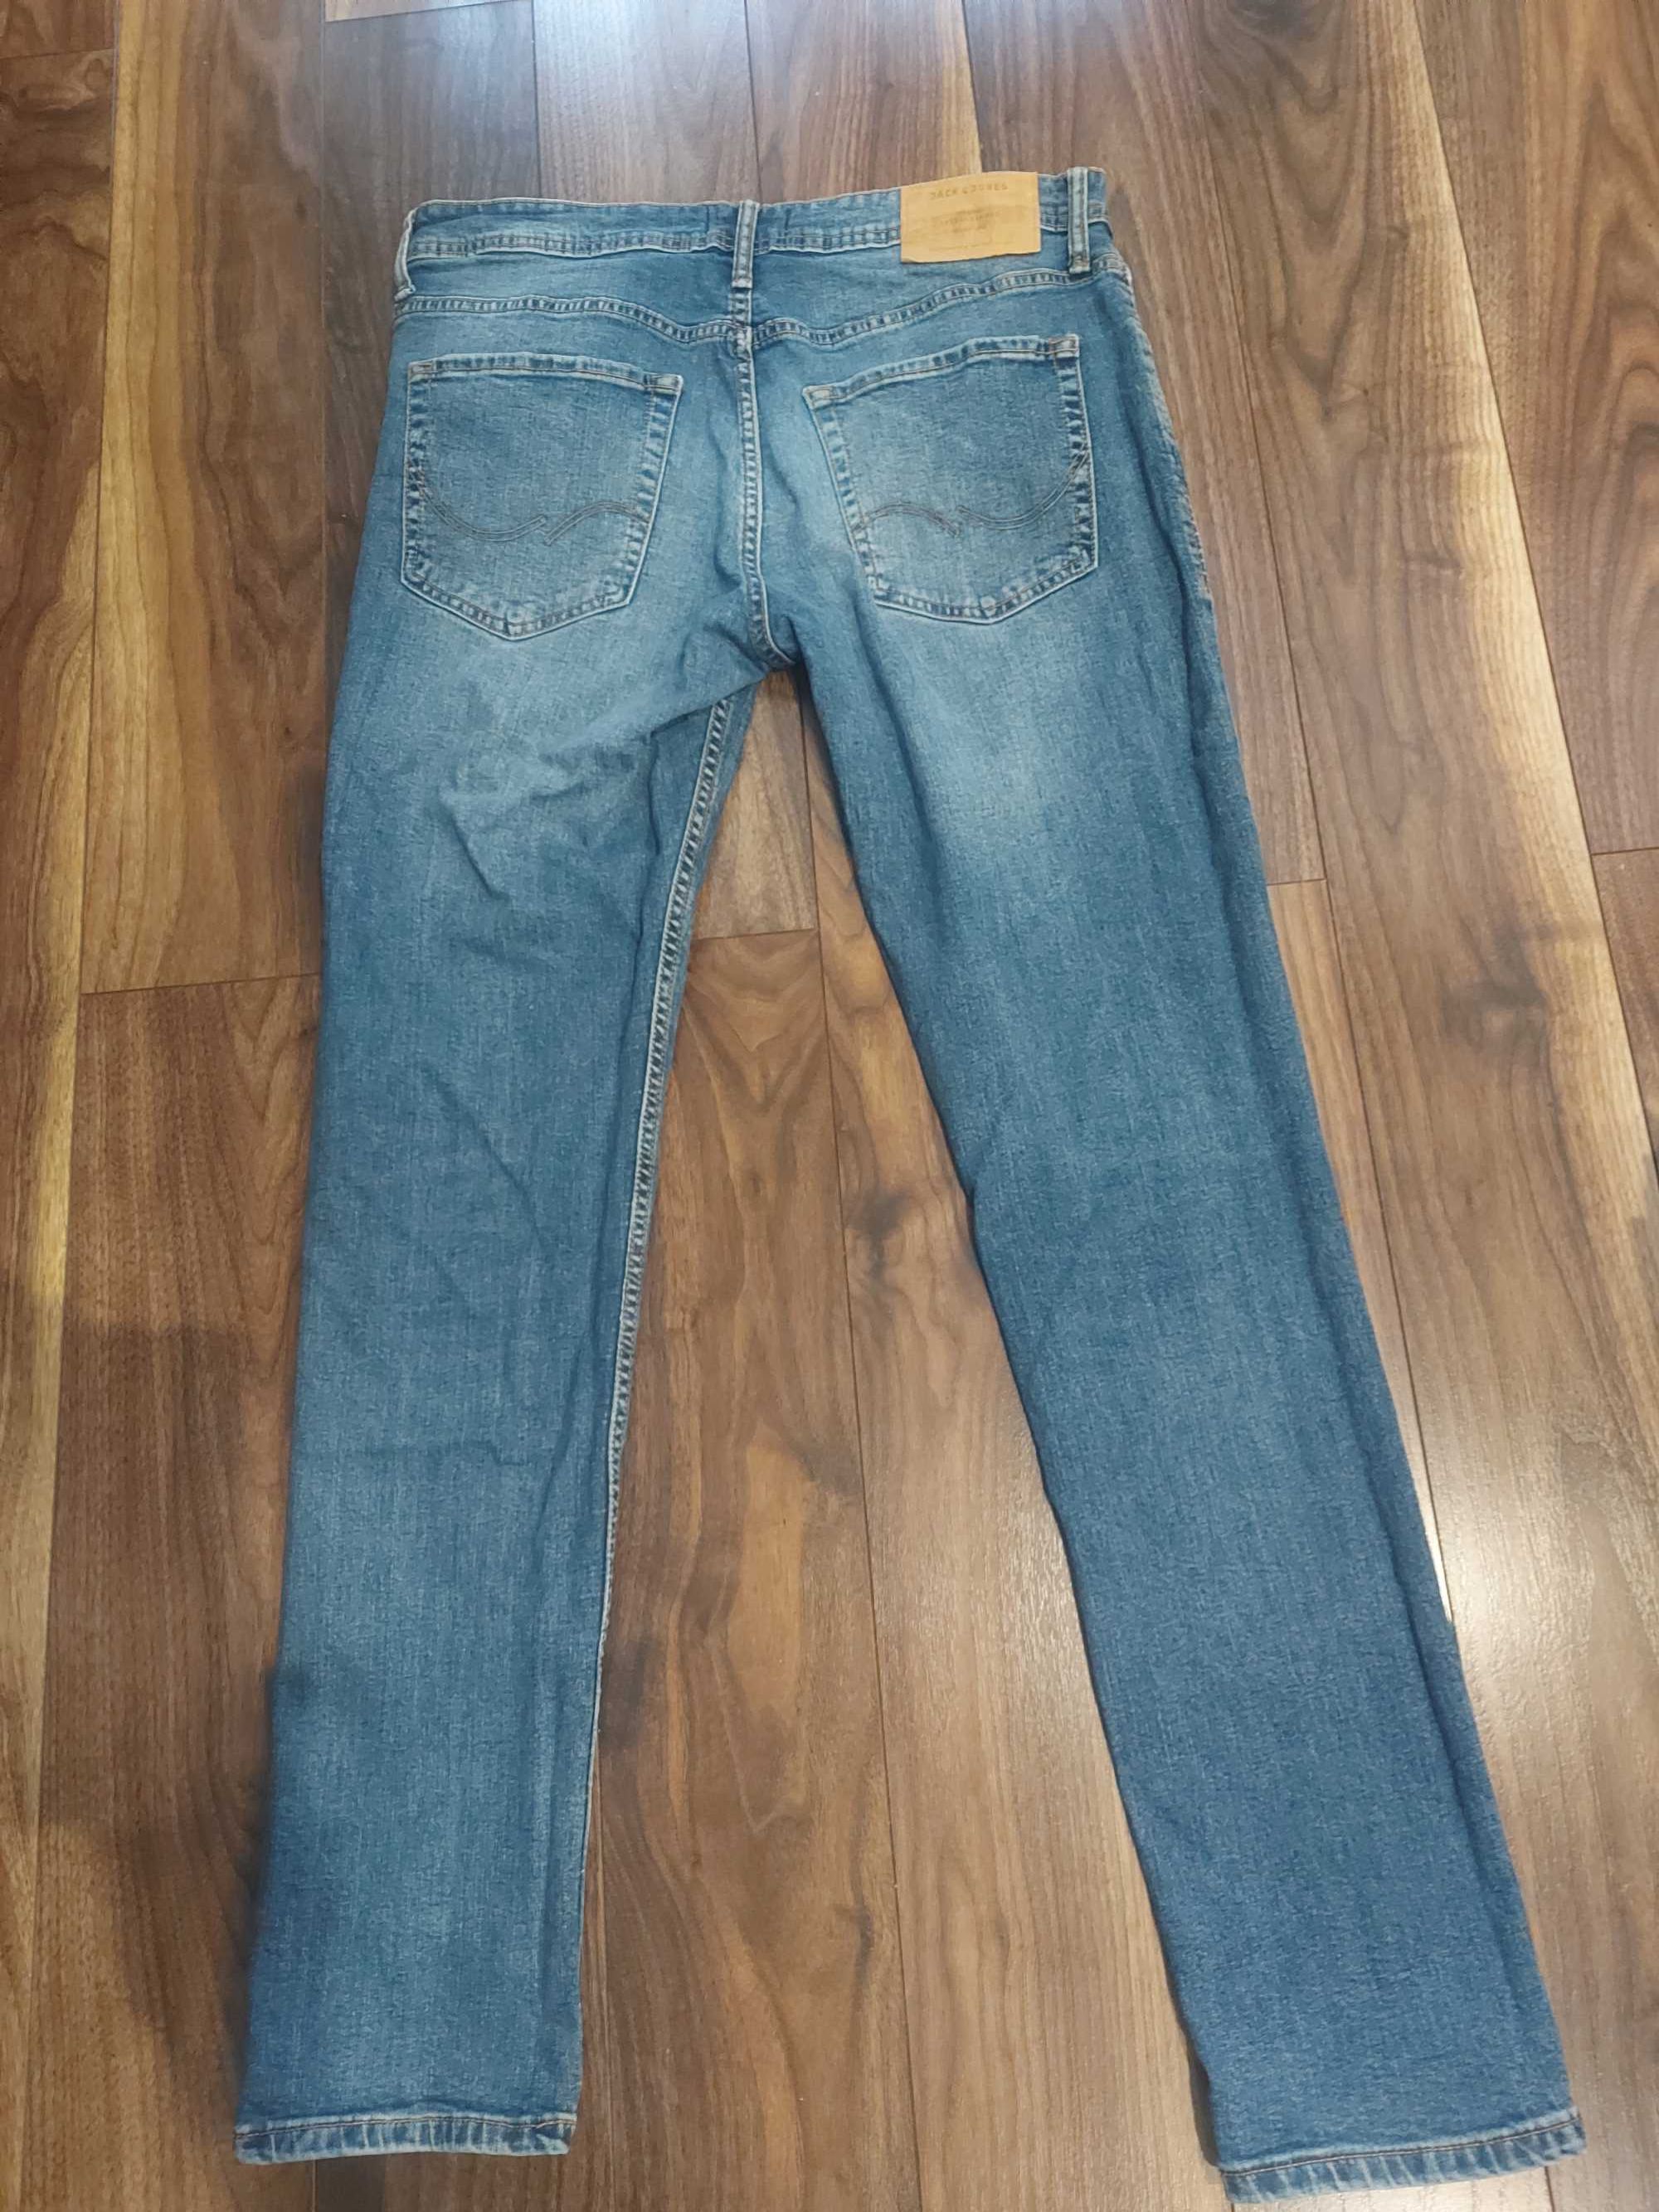 Spodnie jeansowe męskie Jack&Jones slim fit/glenn roz.33/32